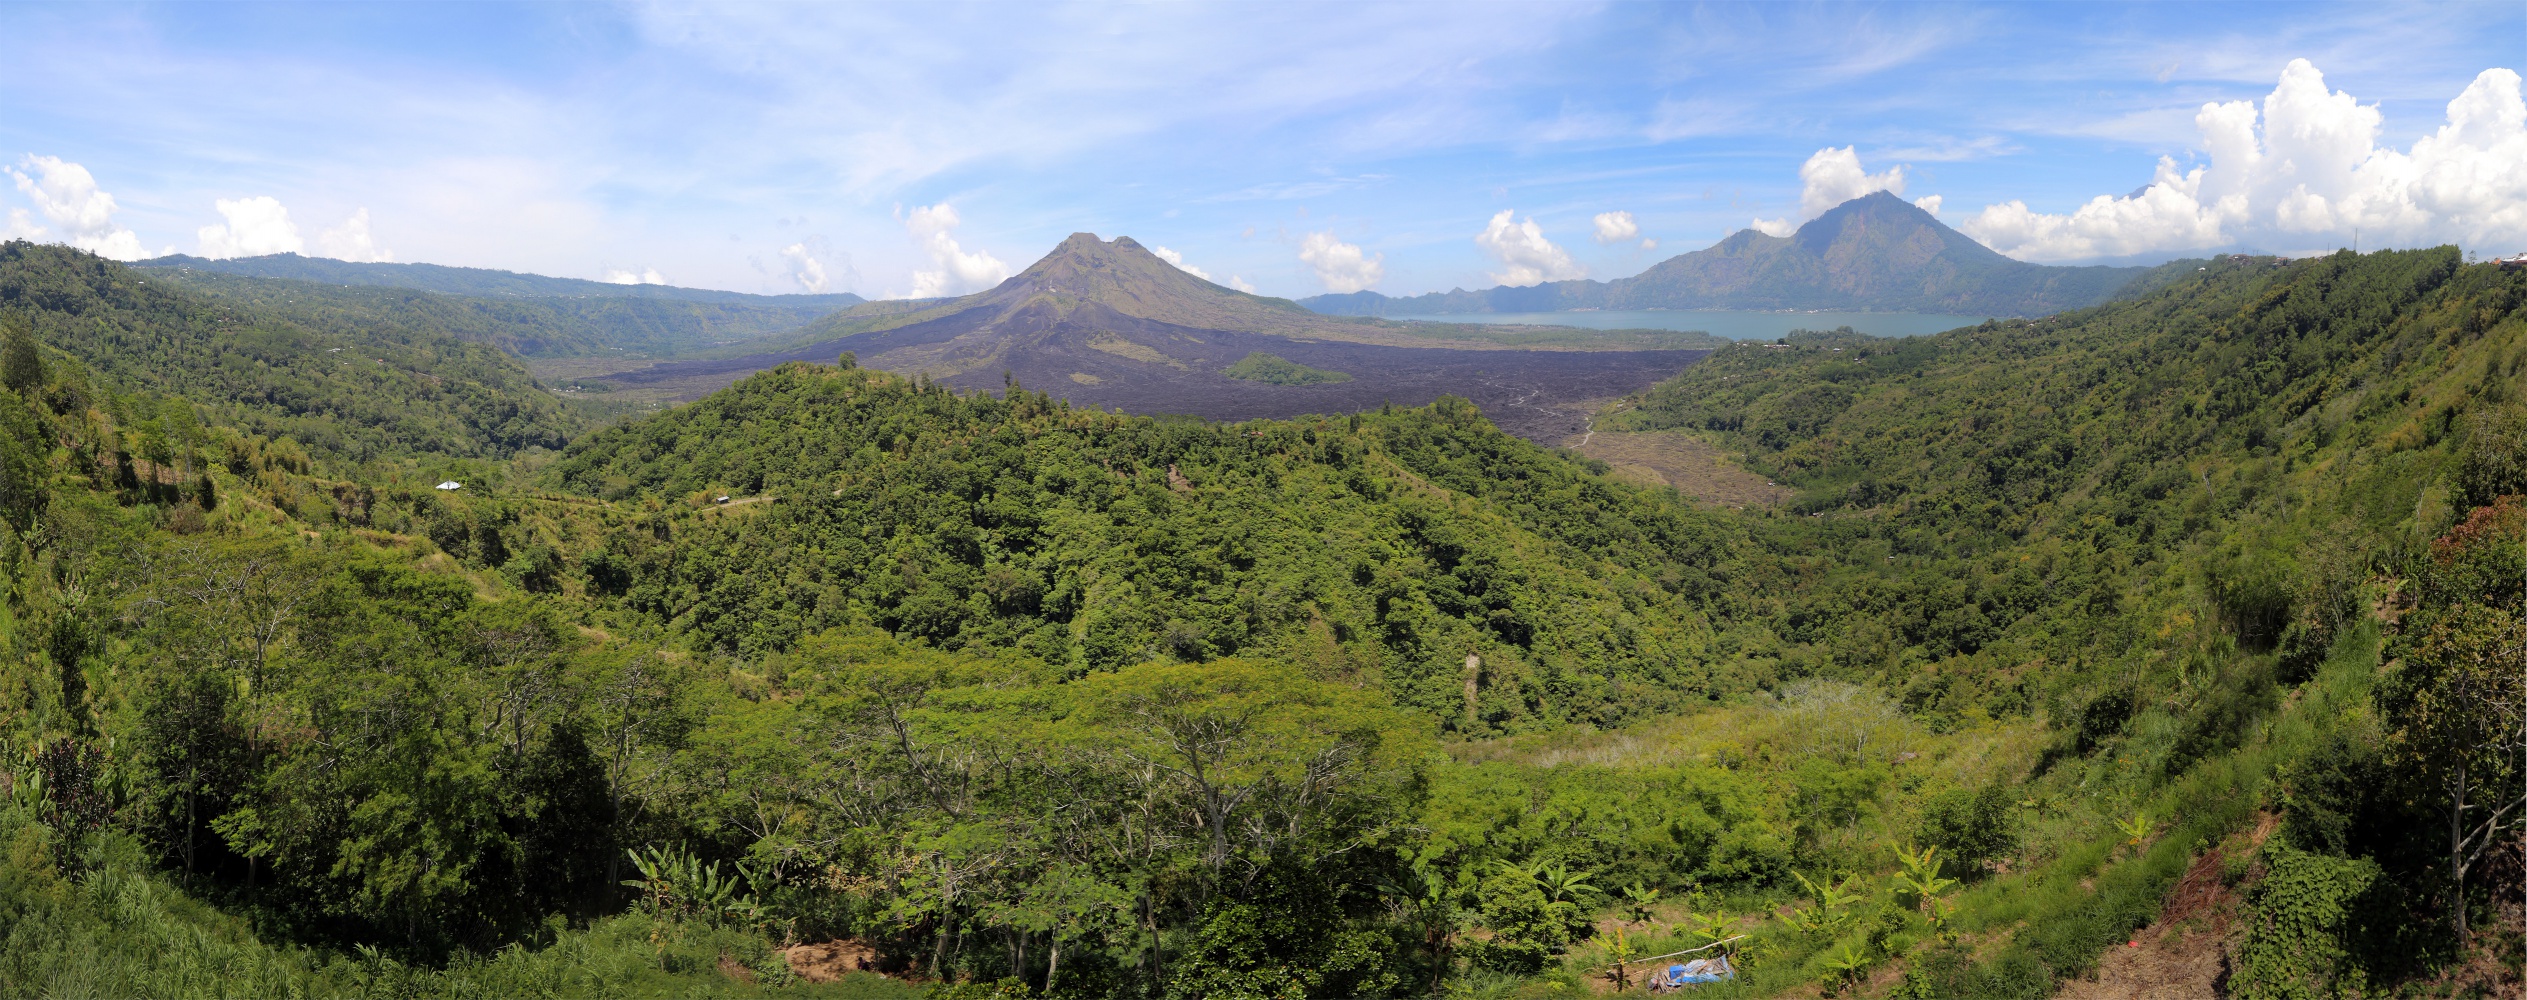 bill-hocker-mt-batur-volcano-bay-indonesia-2016